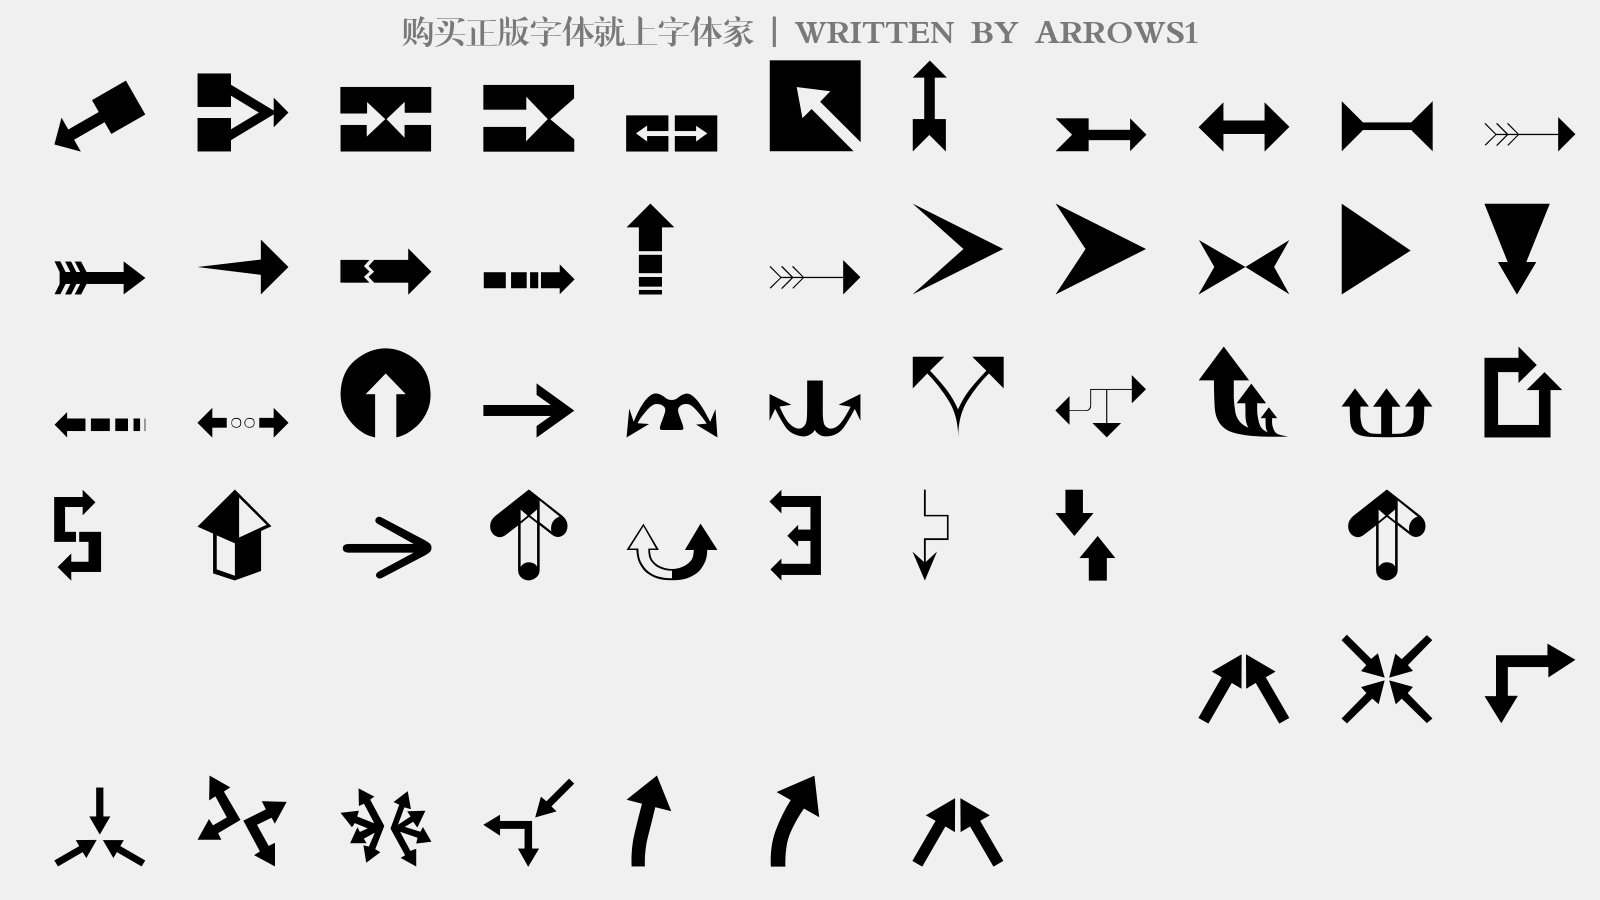 ARROWS1 - 大写字母/小写字母/数字